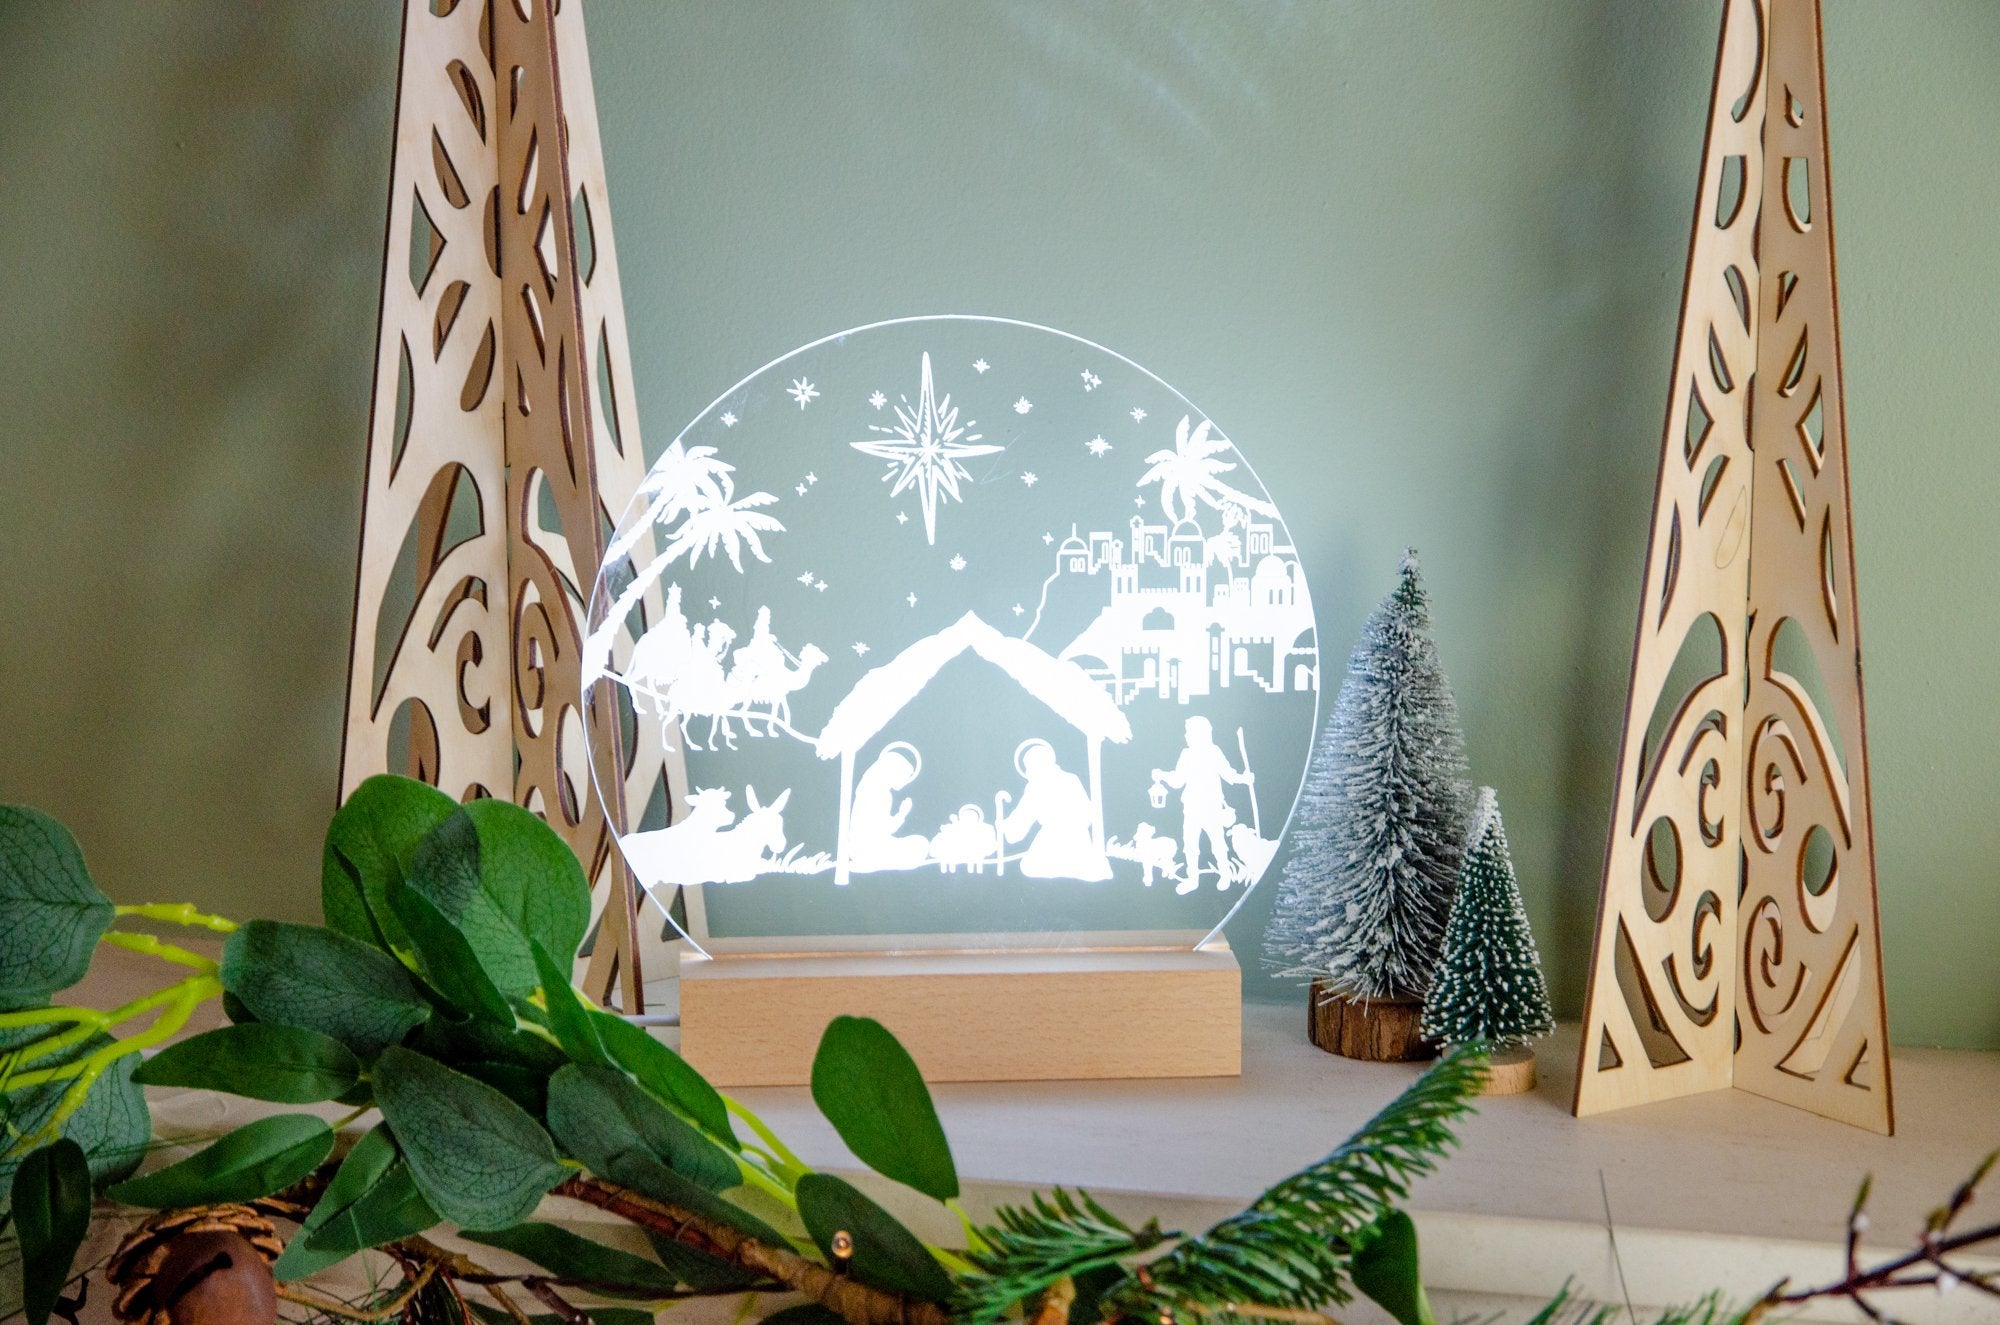 Nativity Scene engraved light design